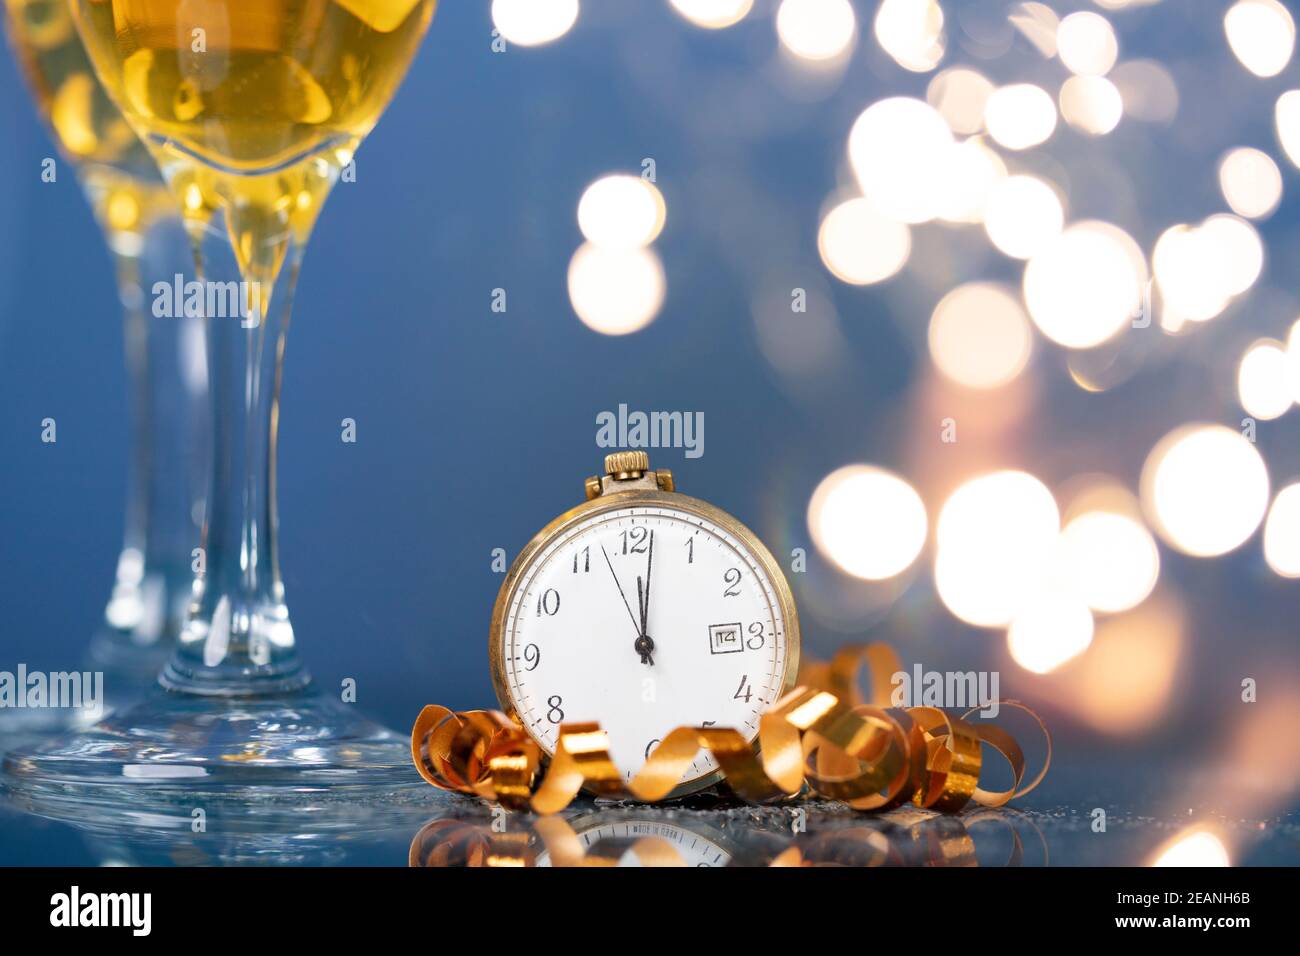 Nouvel an à minuit - horloge ancienne avec décoration de Noël, champagne et lumières de Noël Banque D'Images